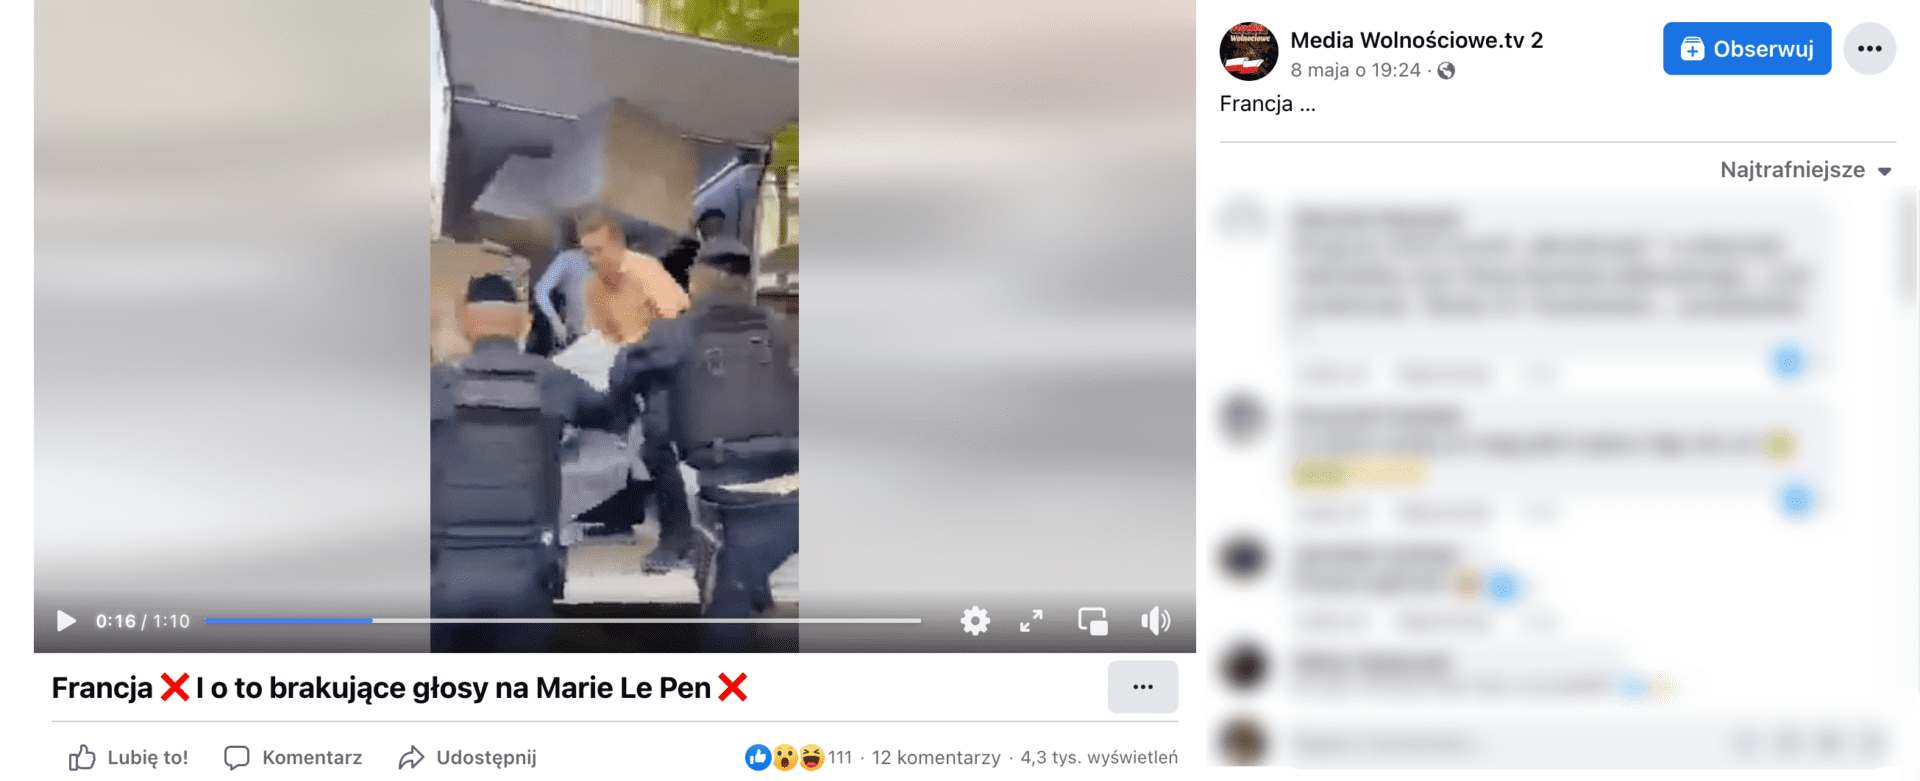 Zrzut ekranu z posta na Facebooku, którym udostępniono nagranie mające udowadniać sfałszowanie wyborów prezydenckich we Francji. Wpis zdobył ponad 100 reakcji, 12 komentarzy. Wyświetlono go ponad 4,3 tys. razy.